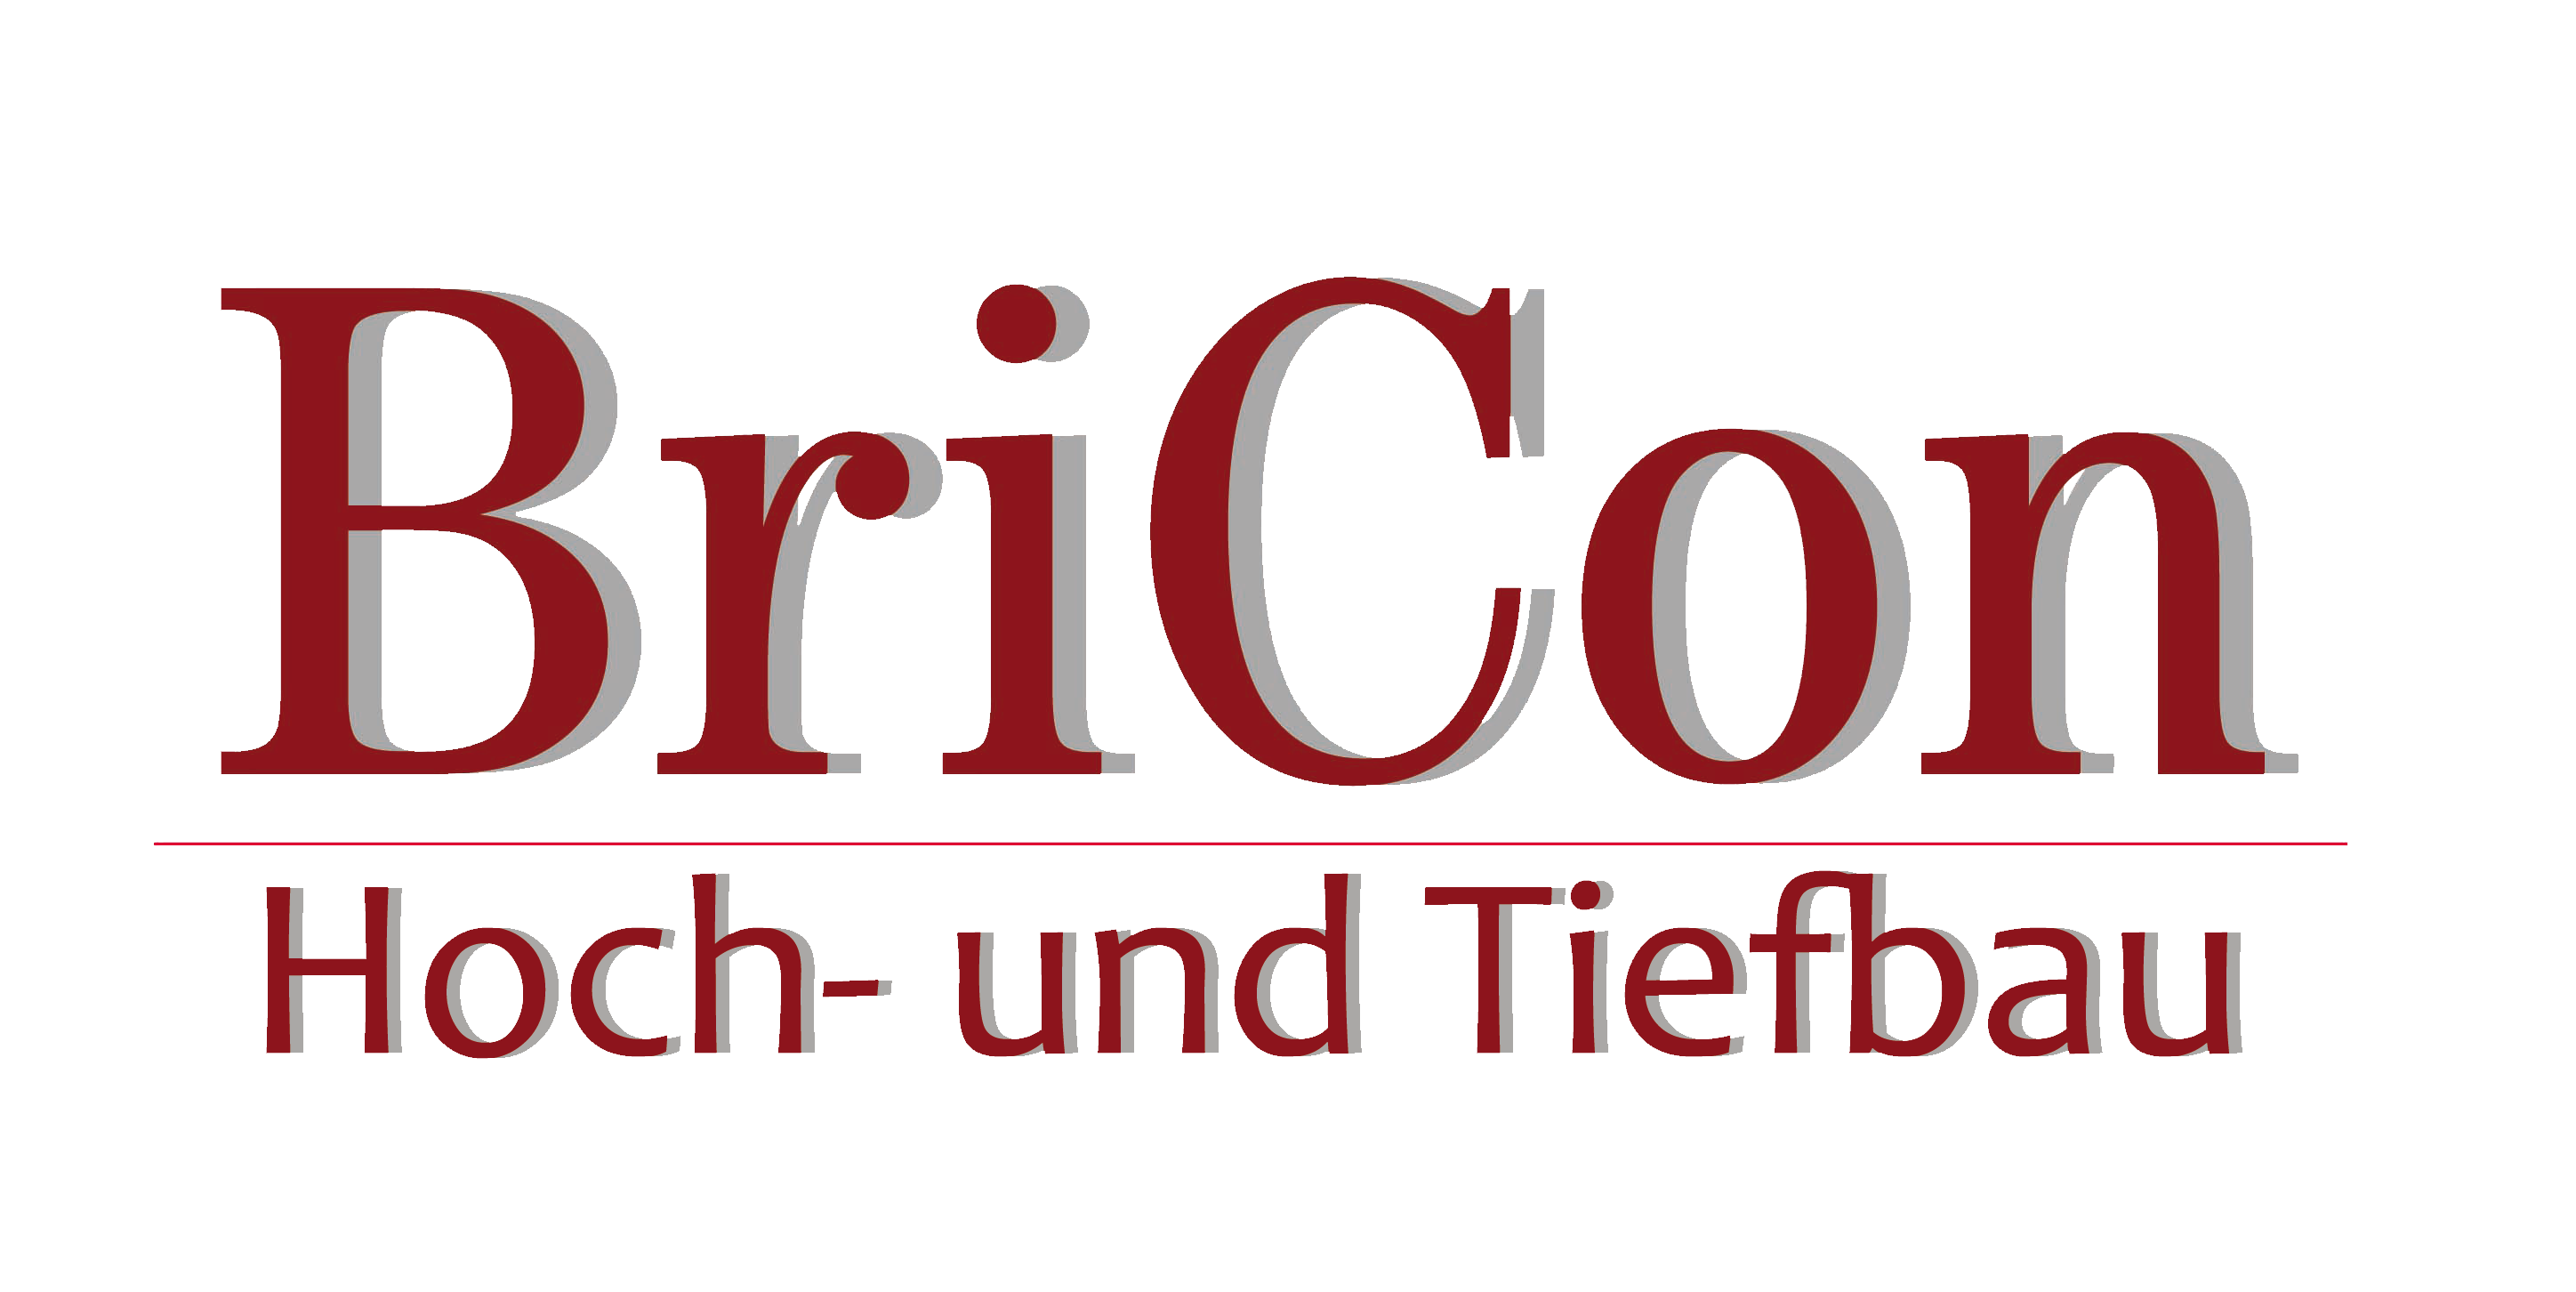 Bricon Hoch- und Tiefbau GmbH